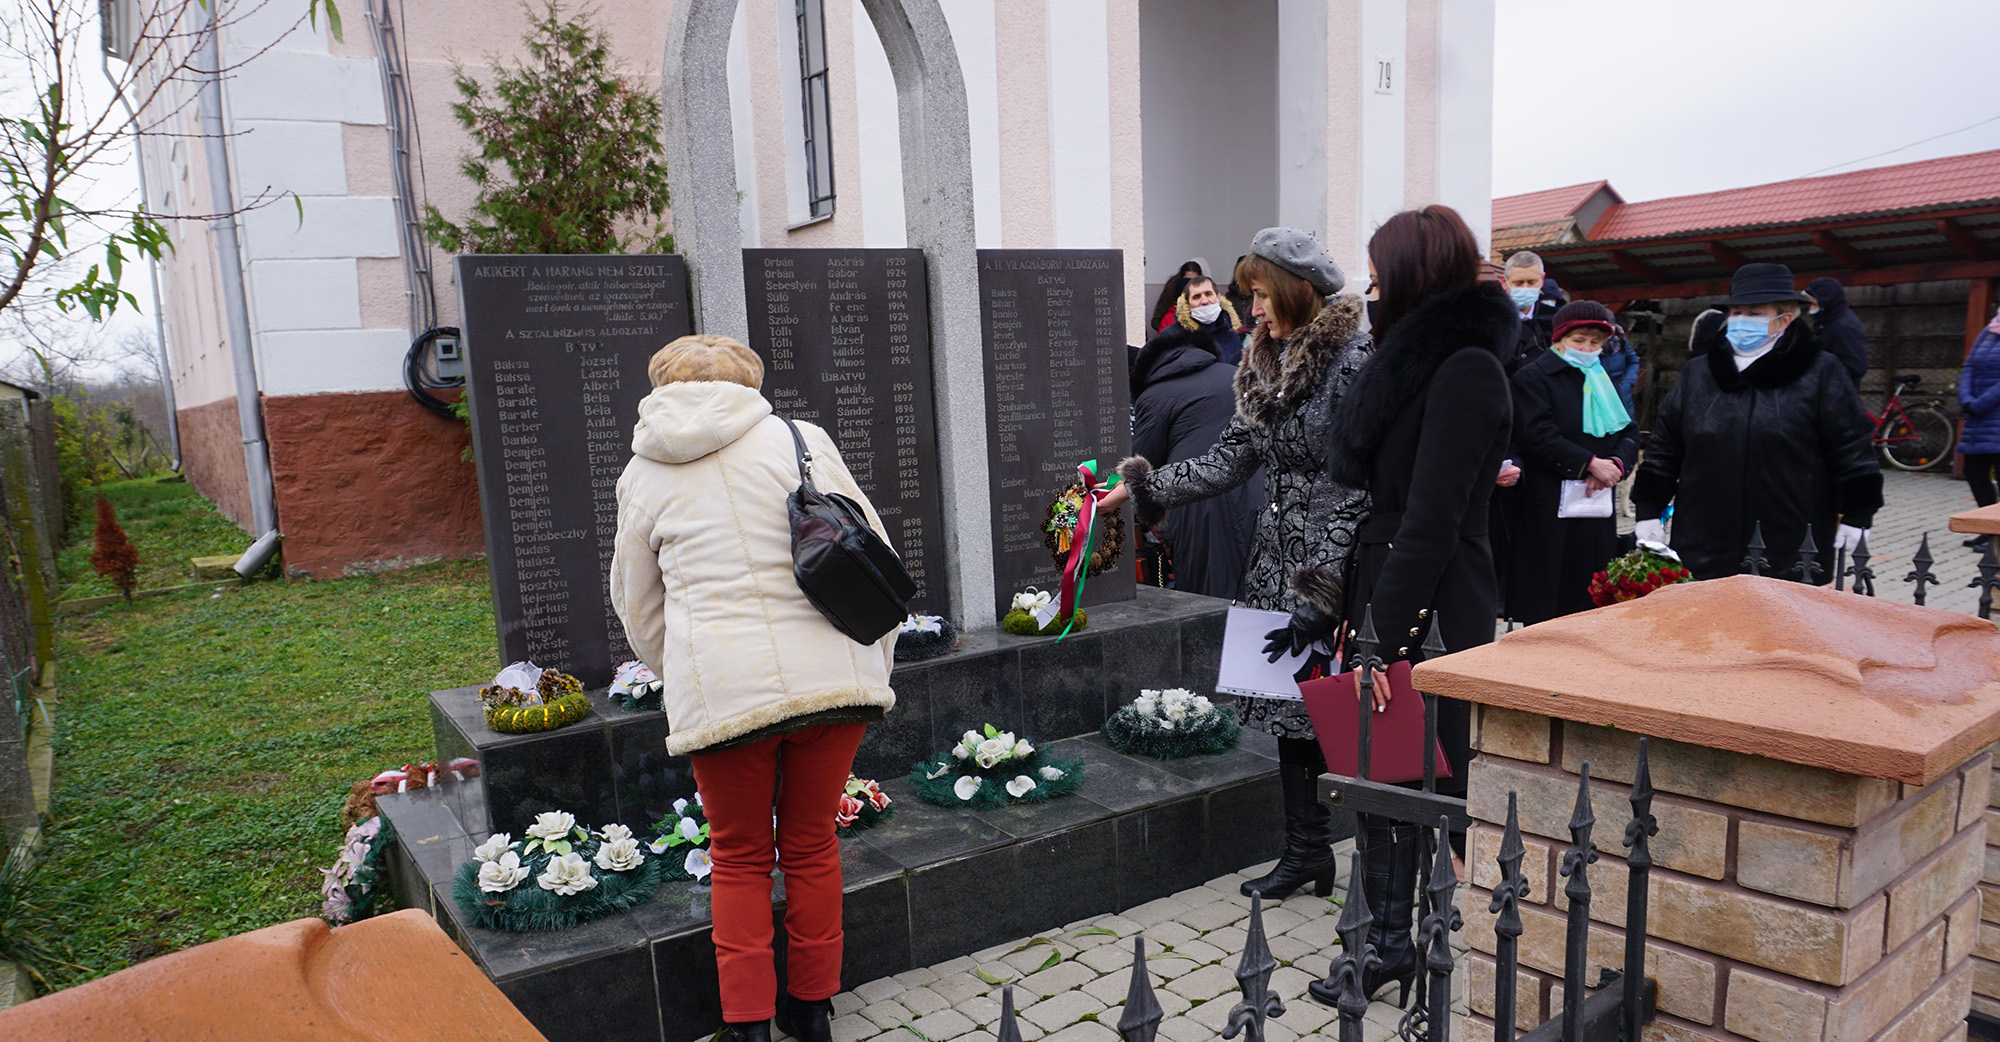 22 листопада меморіальний захід на честь жертв сталінських репресій провели і в селищі Батьово. З огляду на епідемічну ситуацію, захід відбувся у вузькому колі.